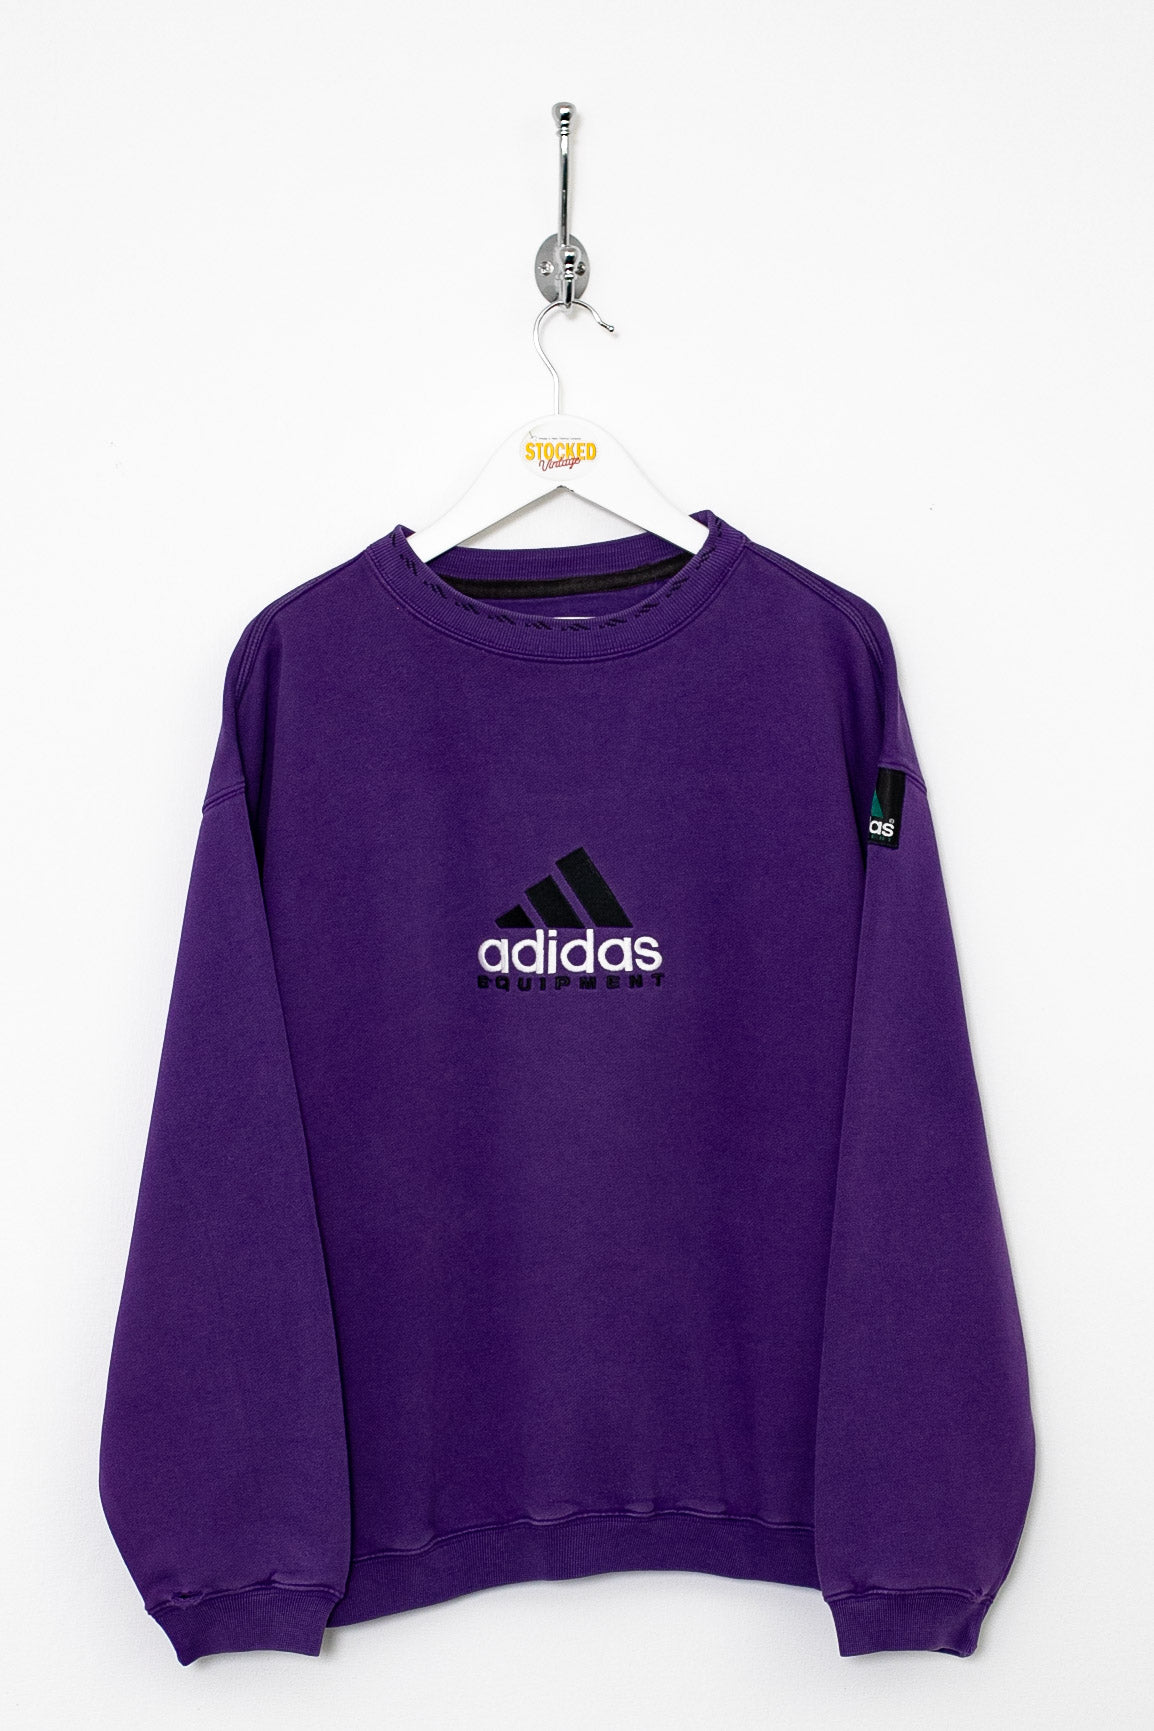 Rare 90s Adidas Equipment Sweatshirt (S)